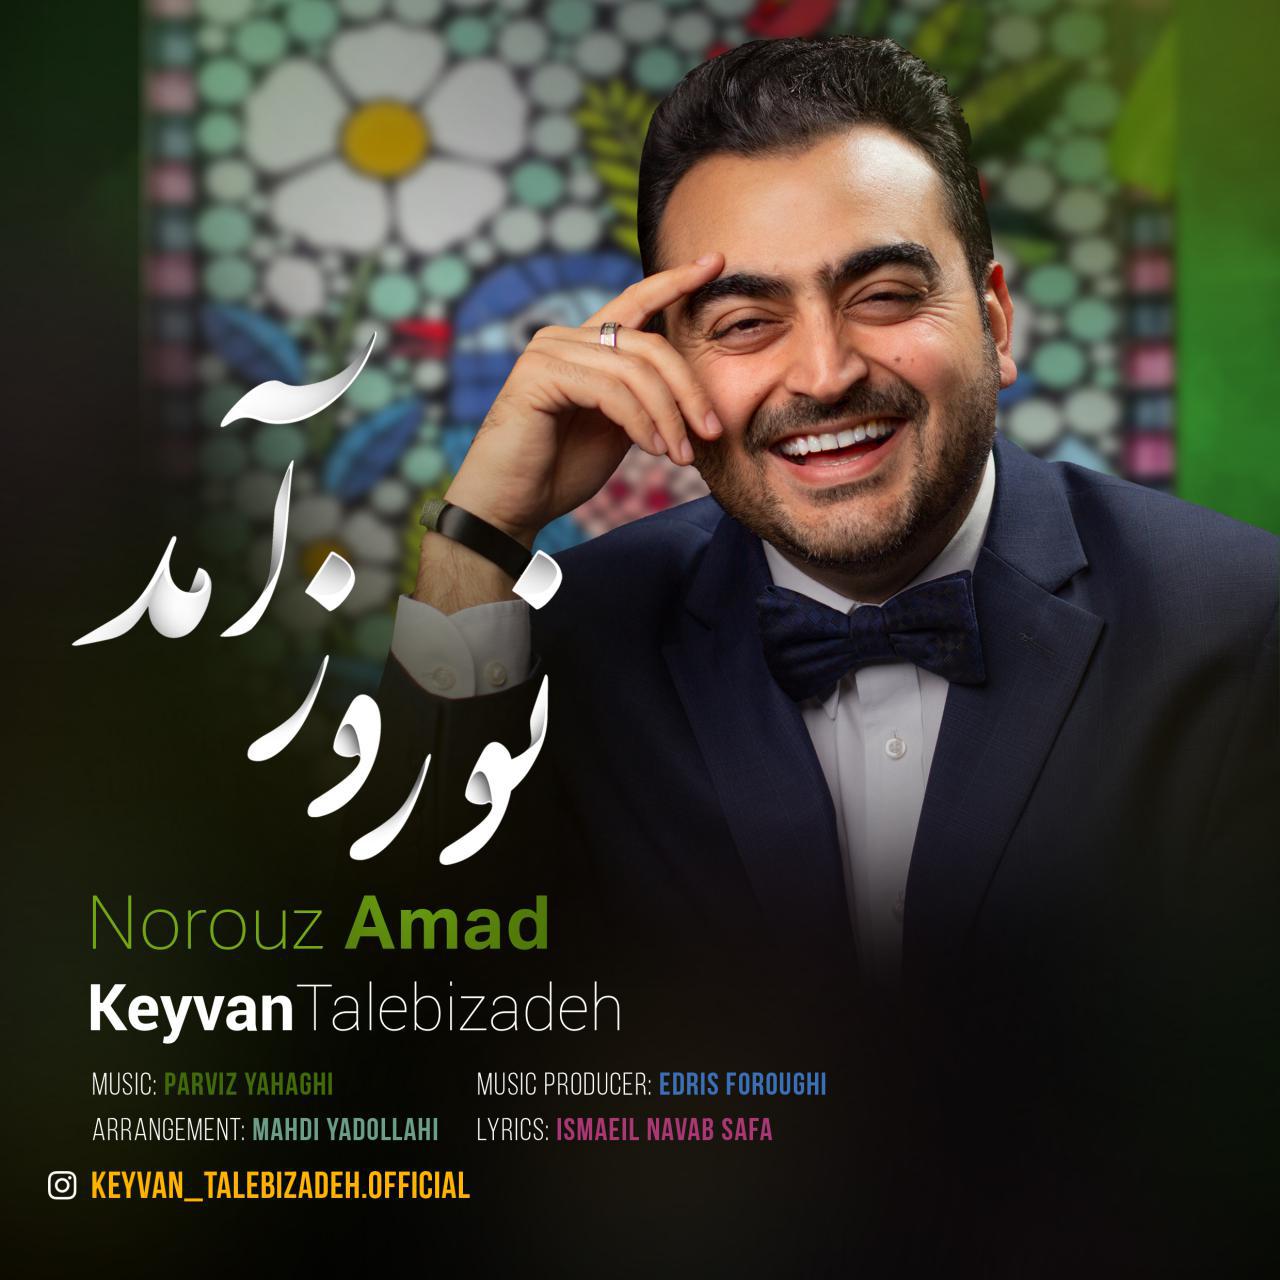 Keyvan Talebizadeh – Norouz Amad